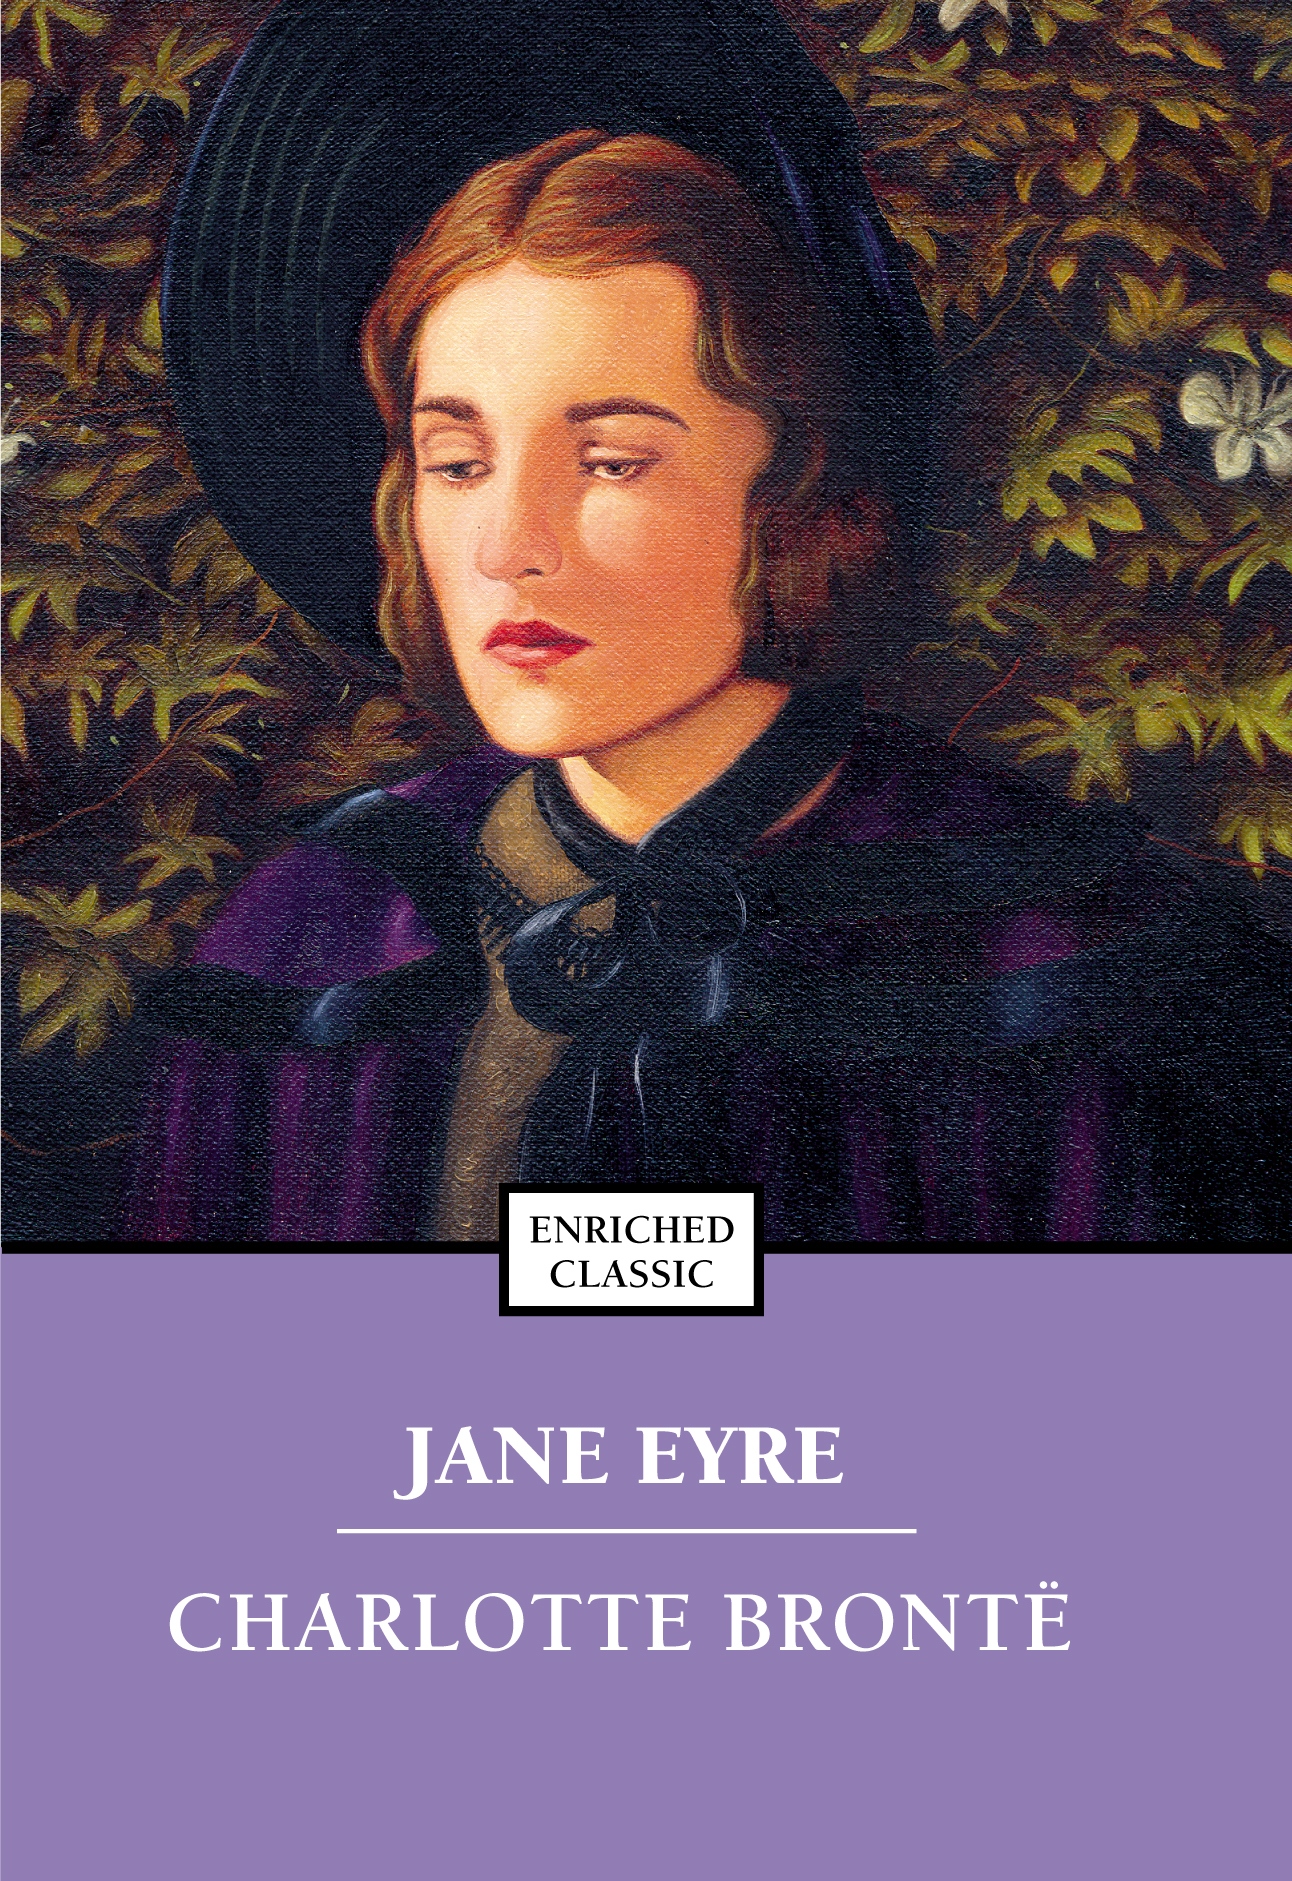 Jane Eyre - listen book free online